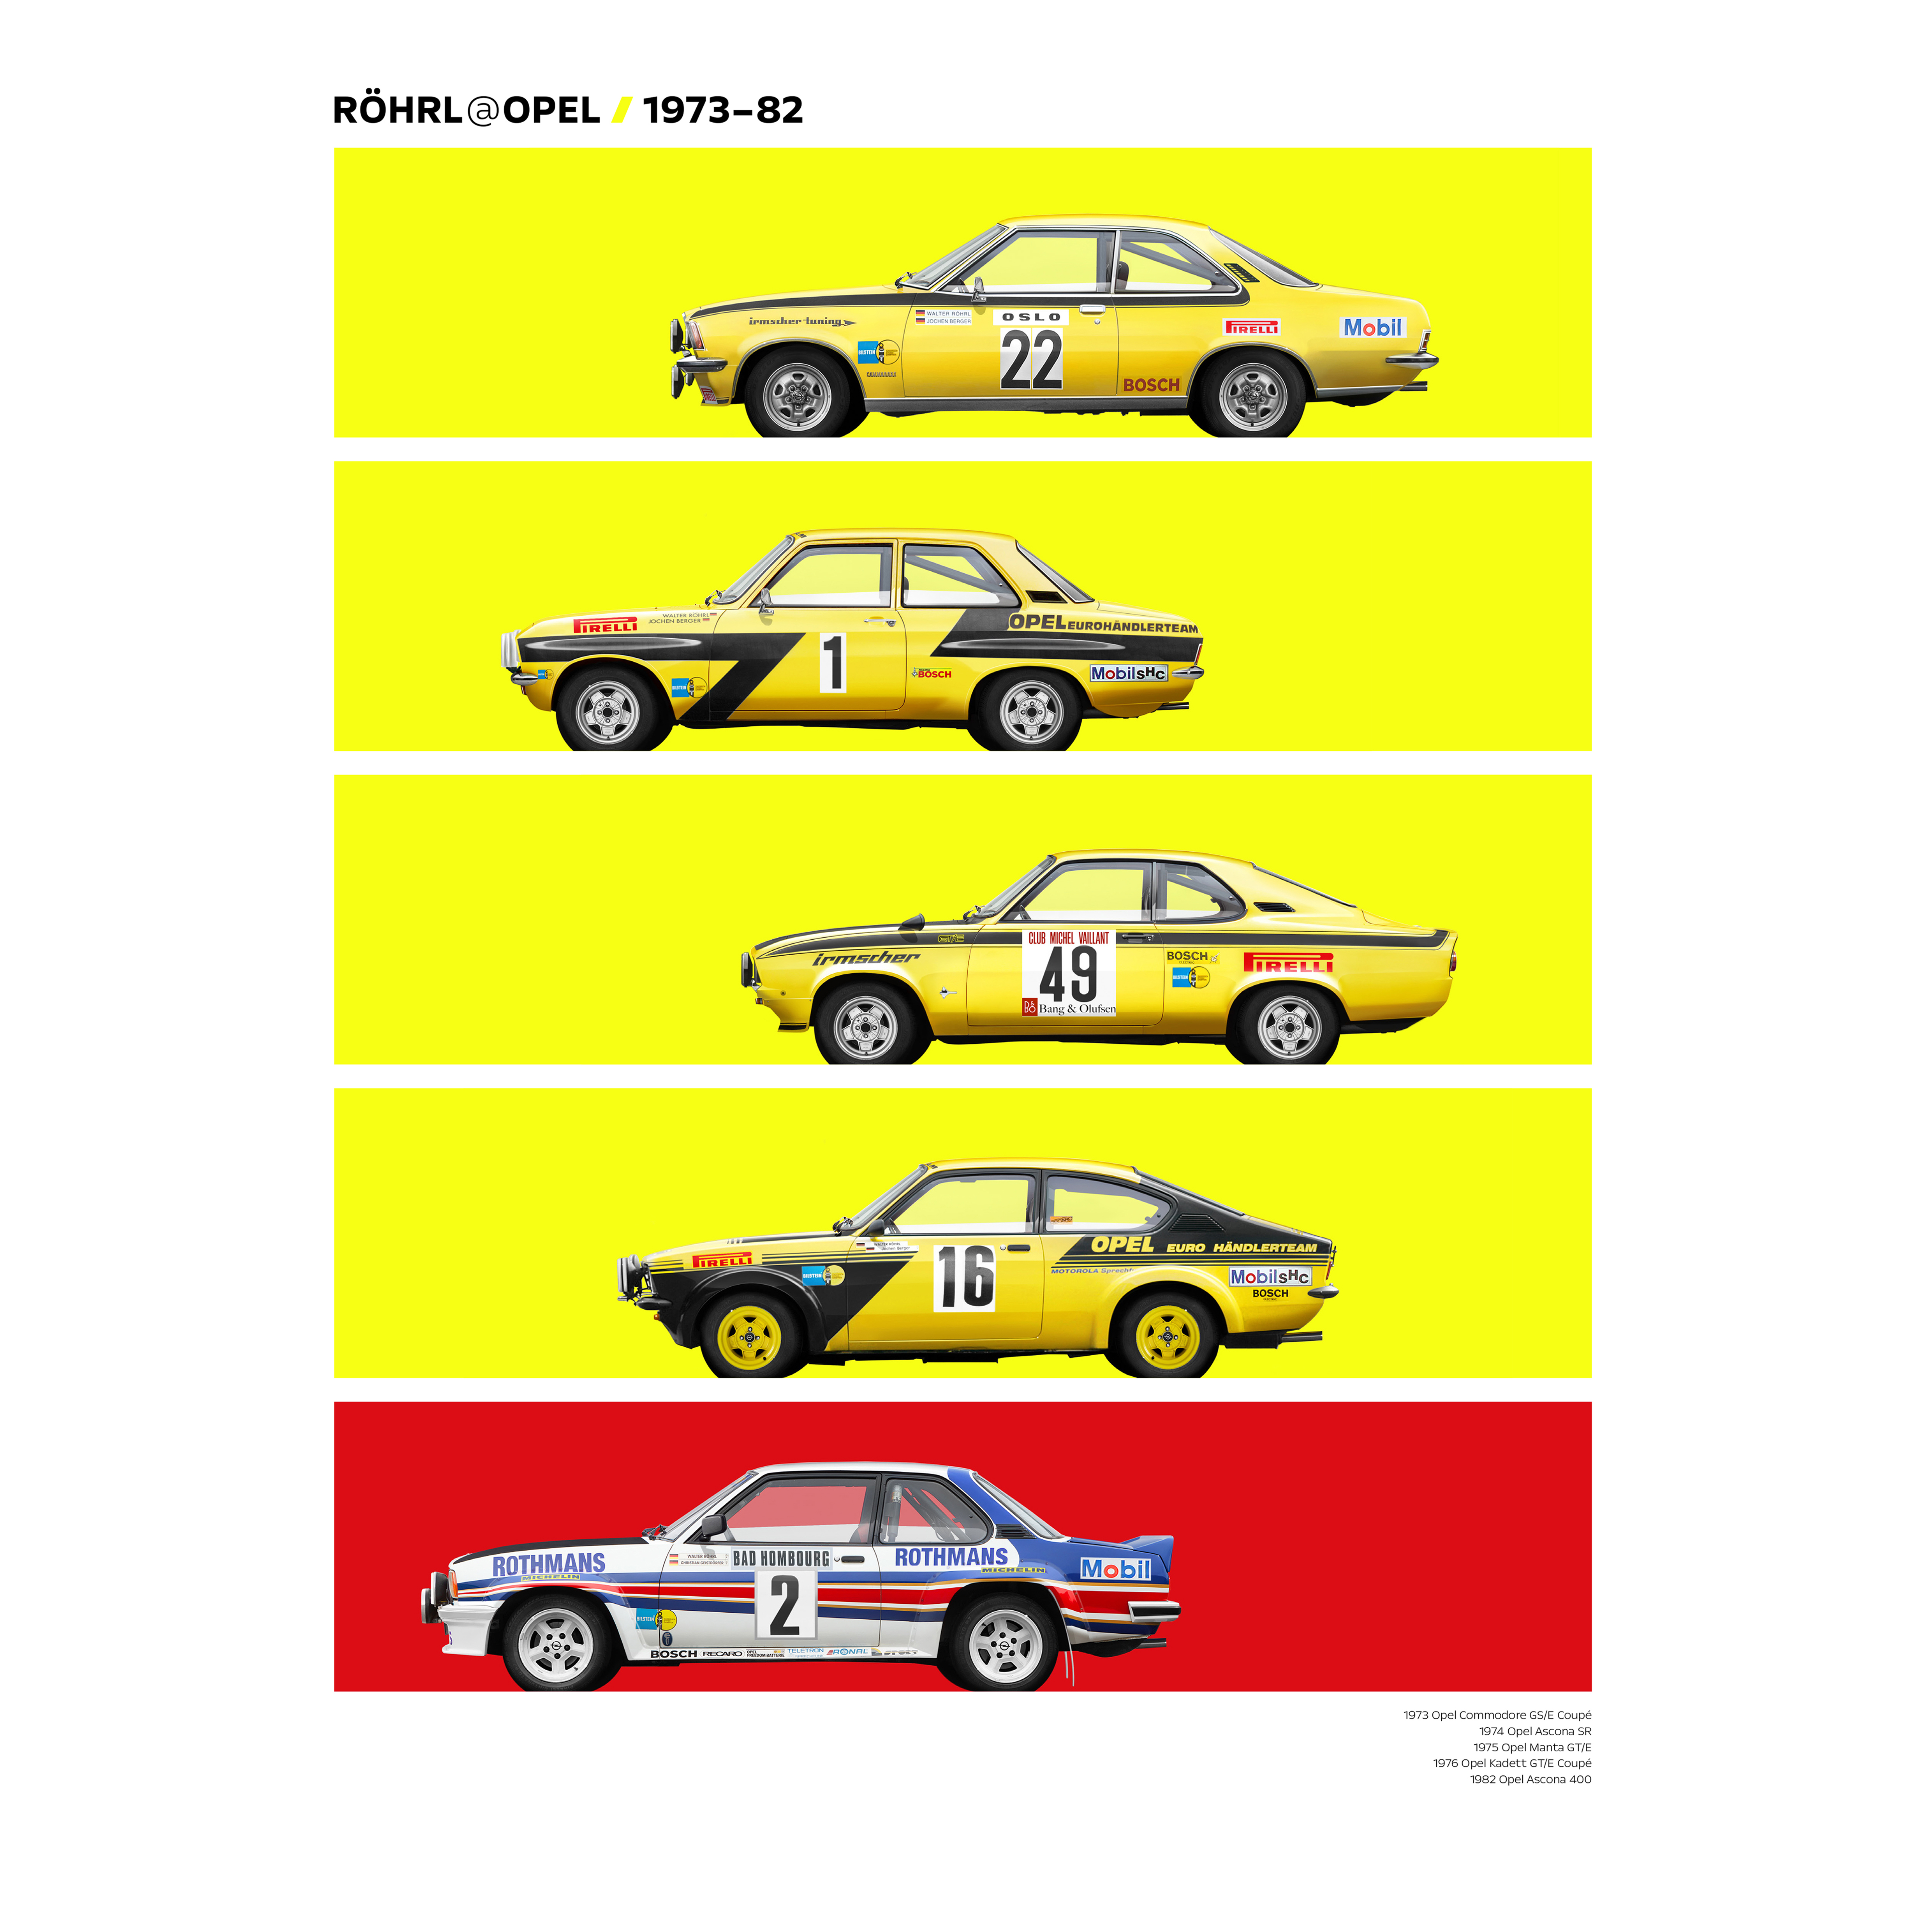 RÖHRL@OPEL 1973-82  racecars